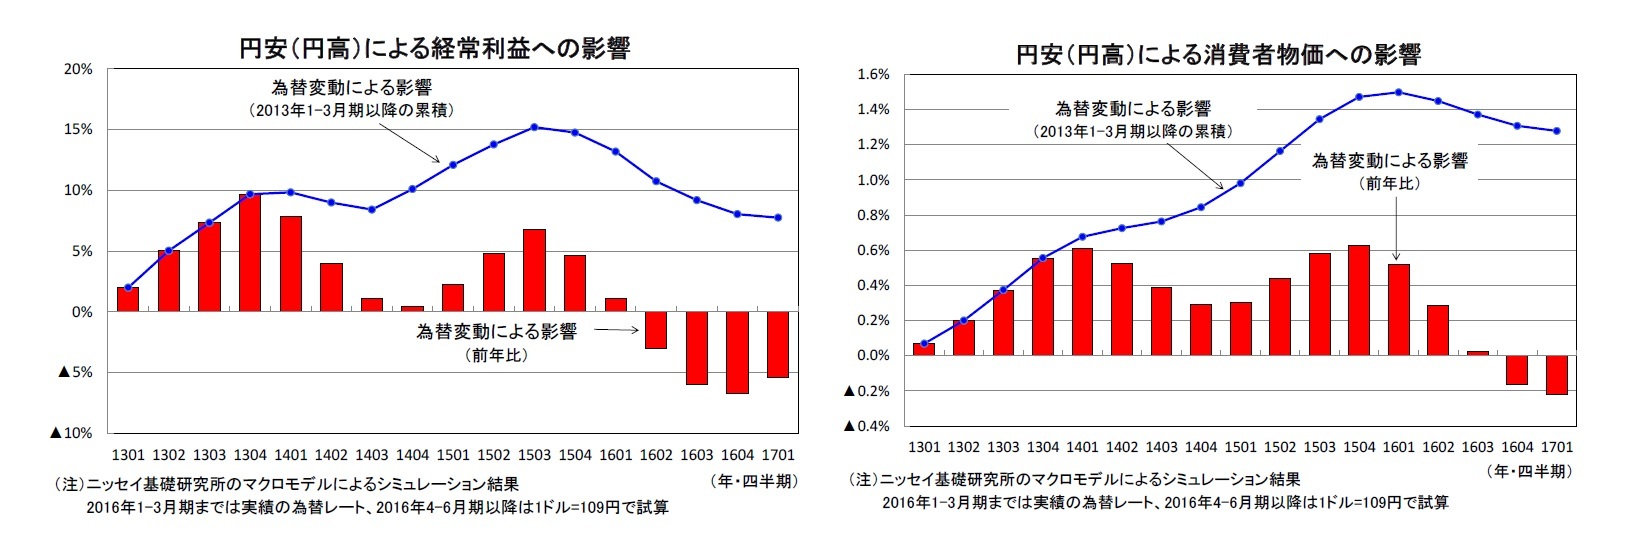 円安（円高）による経常利益への影響/円安（円高）による消費者物価への影響